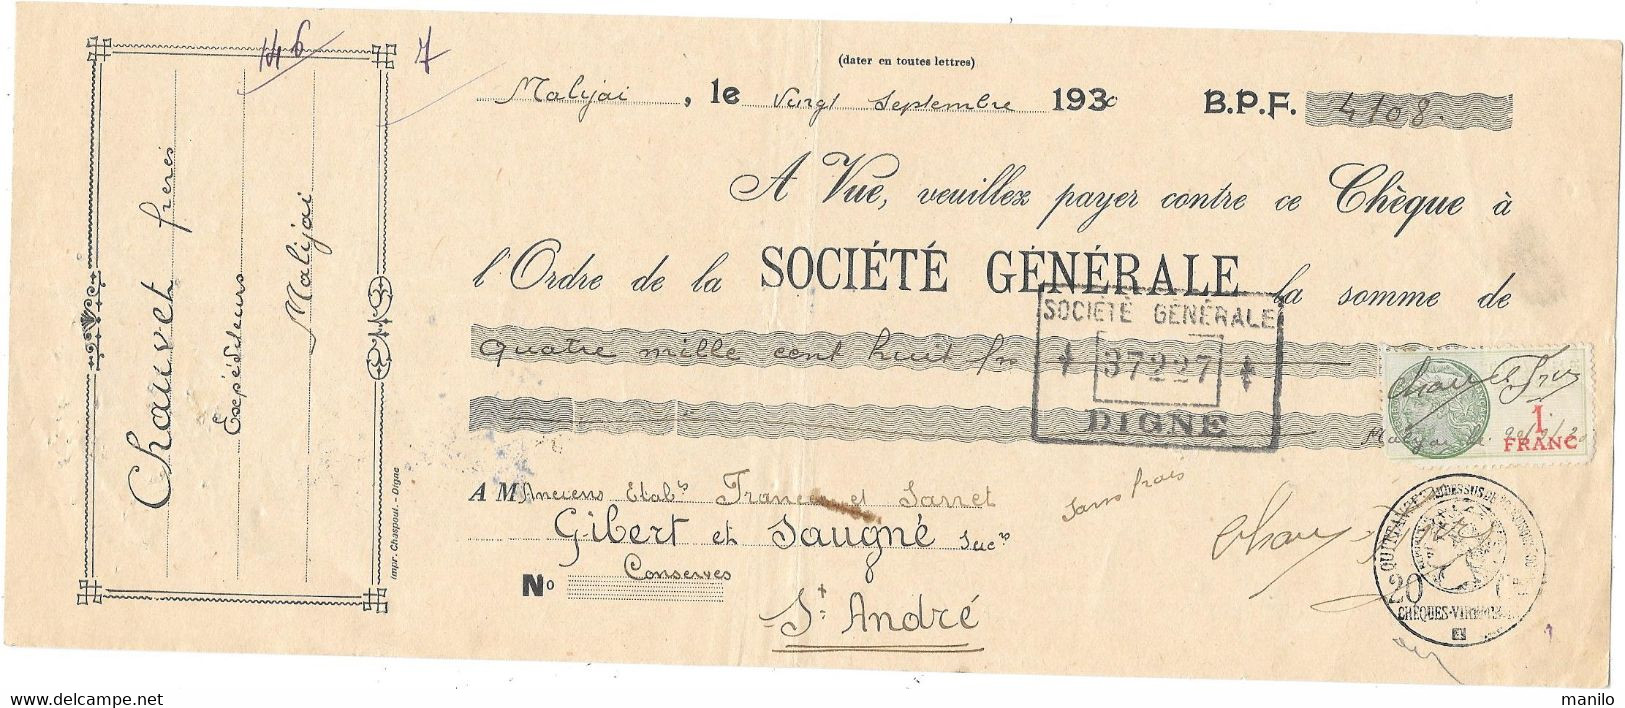 CHEQUE 1930 -  CHAUVET Frères - Expéditeurs  MALIJAI   > GIBERT & SAUGNE   St André Les Alpes - SOCIETE GENERALE Digne - Schecks  Und Reiseschecks